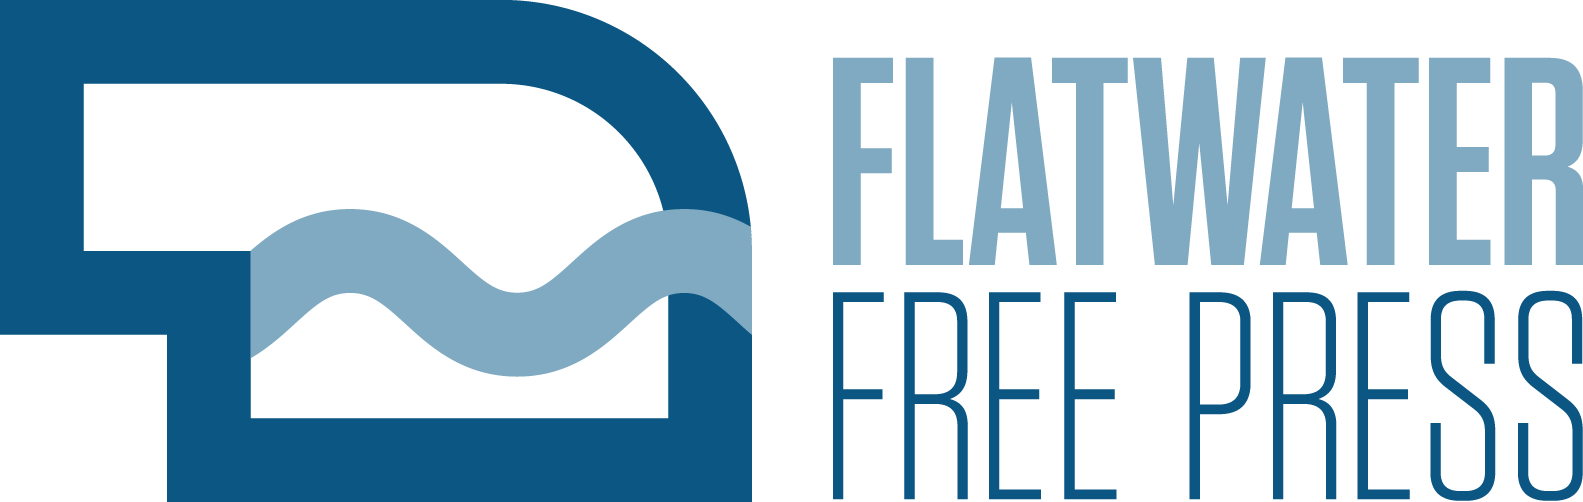 Flatwater Free Press